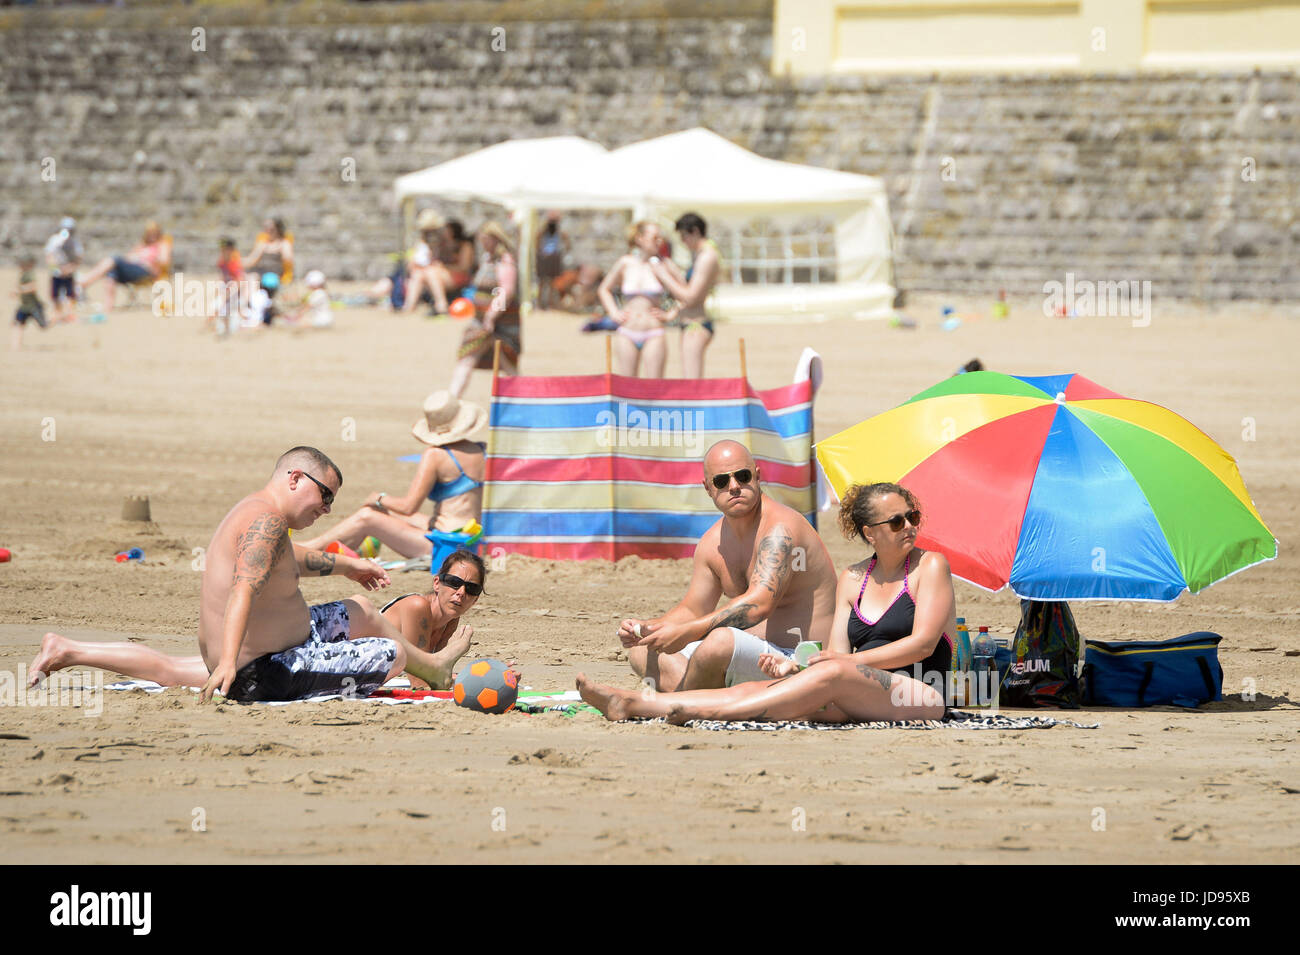 Sonnenanbeter am Strand von Barry Island, South Wales, wo Temperaturen in den hohen zwanziger Jahren sind und Menschen strömen in das Meer, das herrliche sonnige Wetter zu genießen. Stockfoto